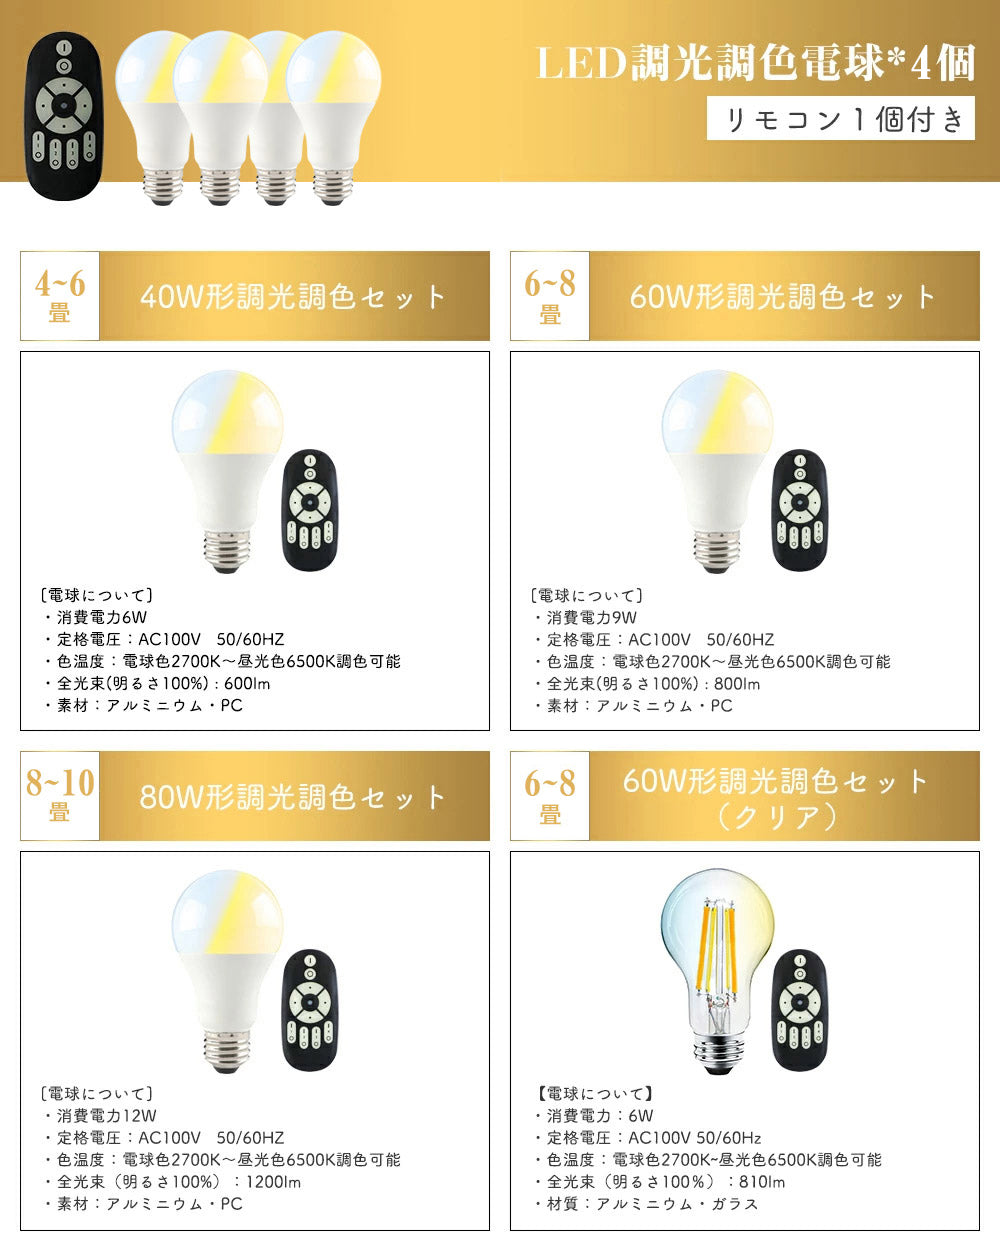 共同照明】シーリングライト 4灯 スポットライト LED対応 E26 照明器具